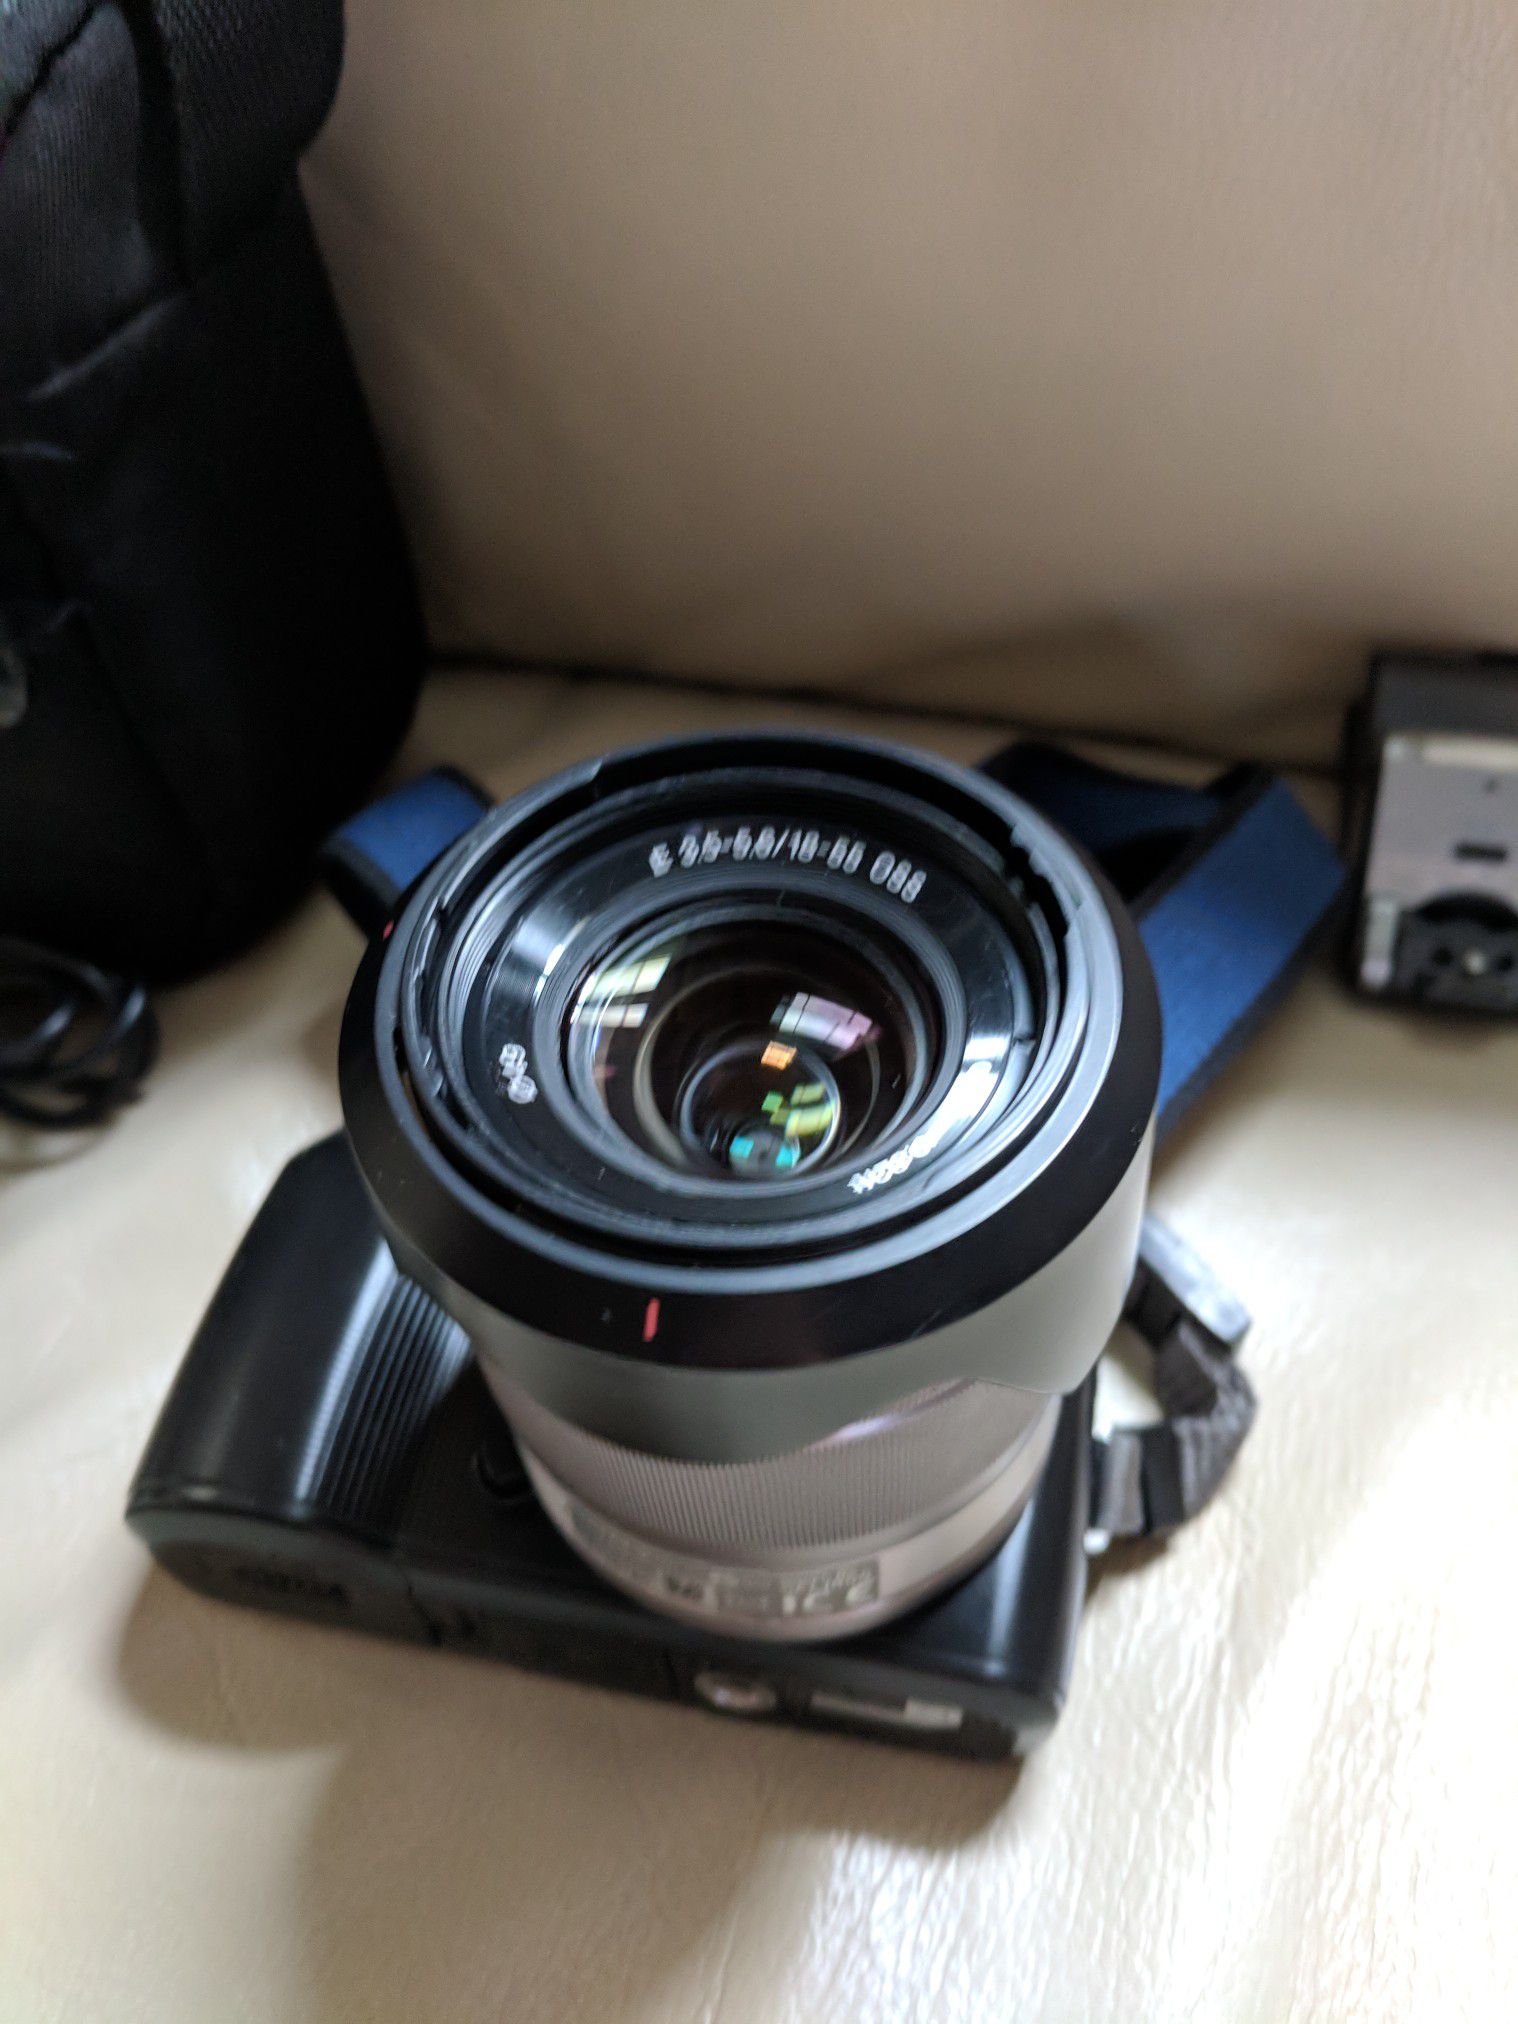 Sony NEX-C3 mirrorless camera - like new